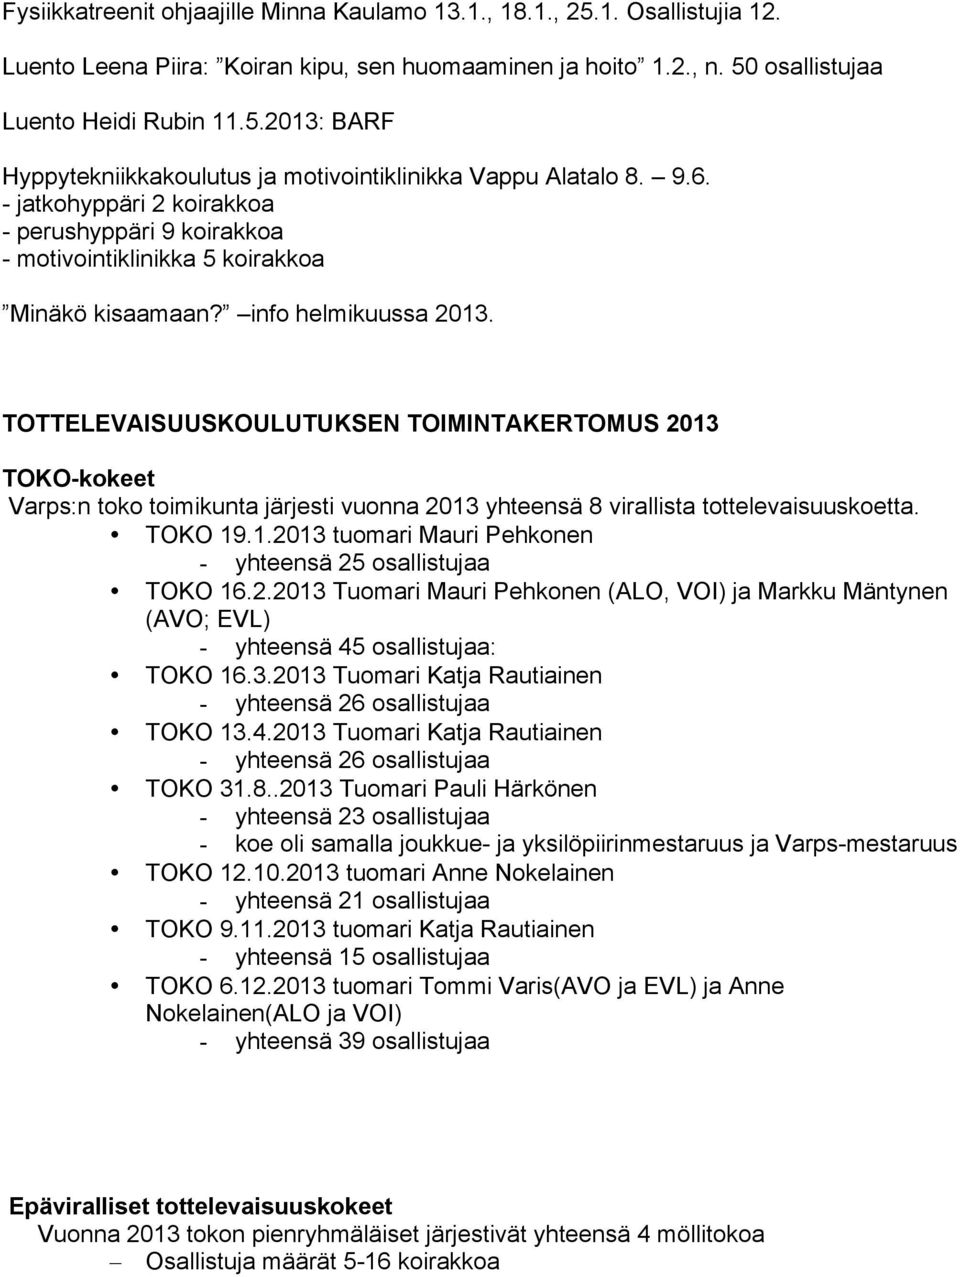 TOTTELEVAISUUSKOULUTUKSEN TOIMINTAKERTOMUS 2013 TOKO-kokeet Varps:n toko toimikunta järjesti vuonna 2013 yhteensä 8 virallista tottelevaisuuskoetta. TOKO 19.1.2013 tuomari Mauri Pehkonen - yhteensä 25 osallistujaa TOKO 16.